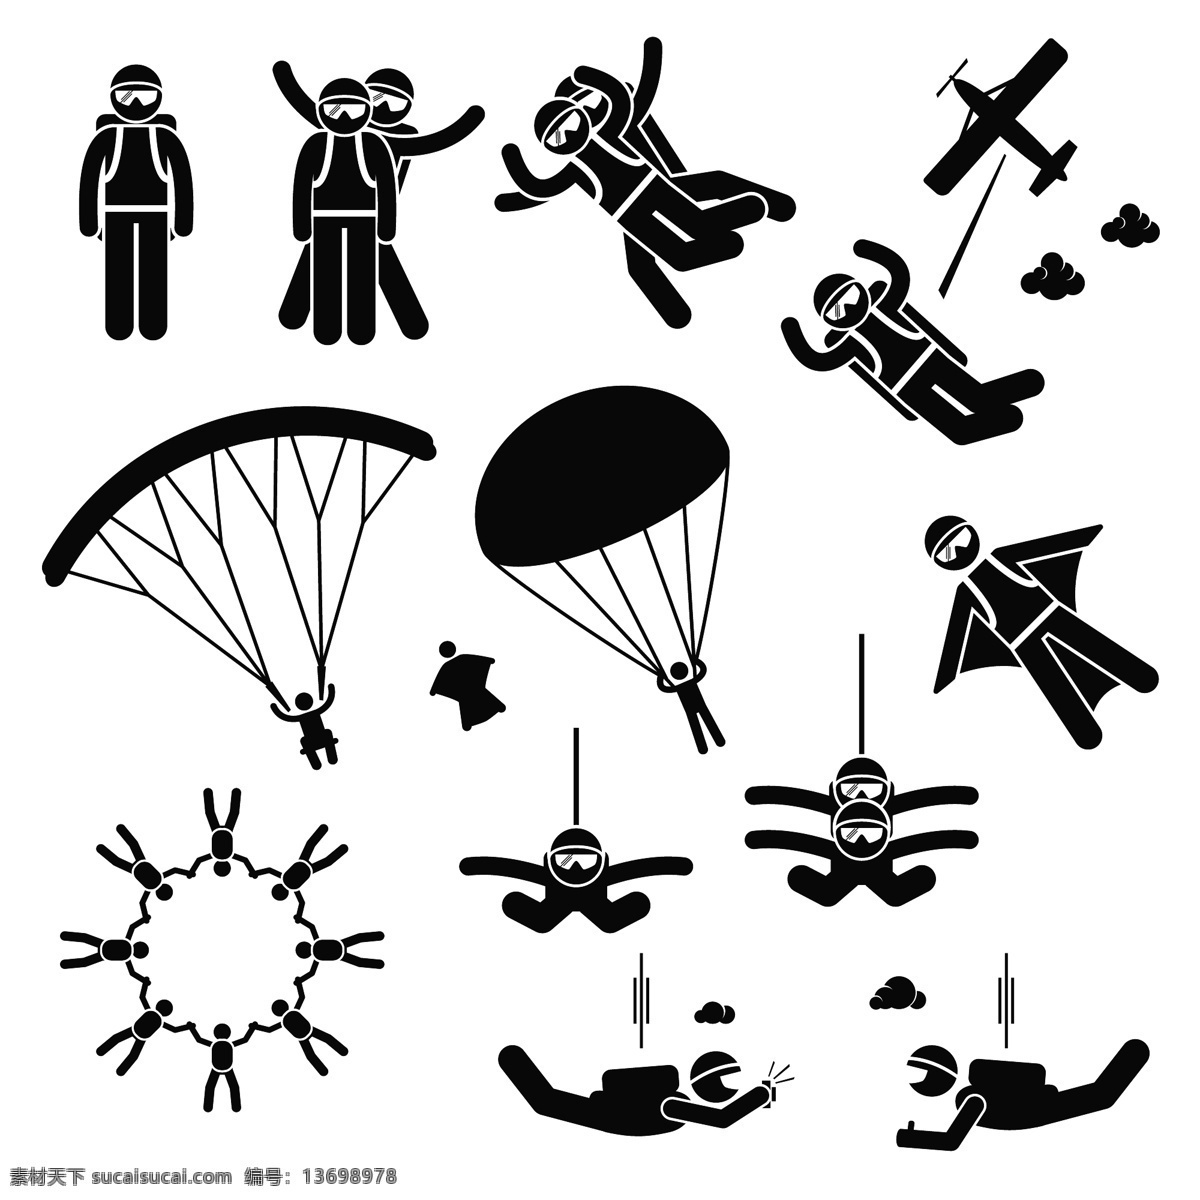 经典 黑白 圆头 小人 降落伞 飞机 蹦极 矢量 源文件 下载图案 装饰图案 平面设计素材